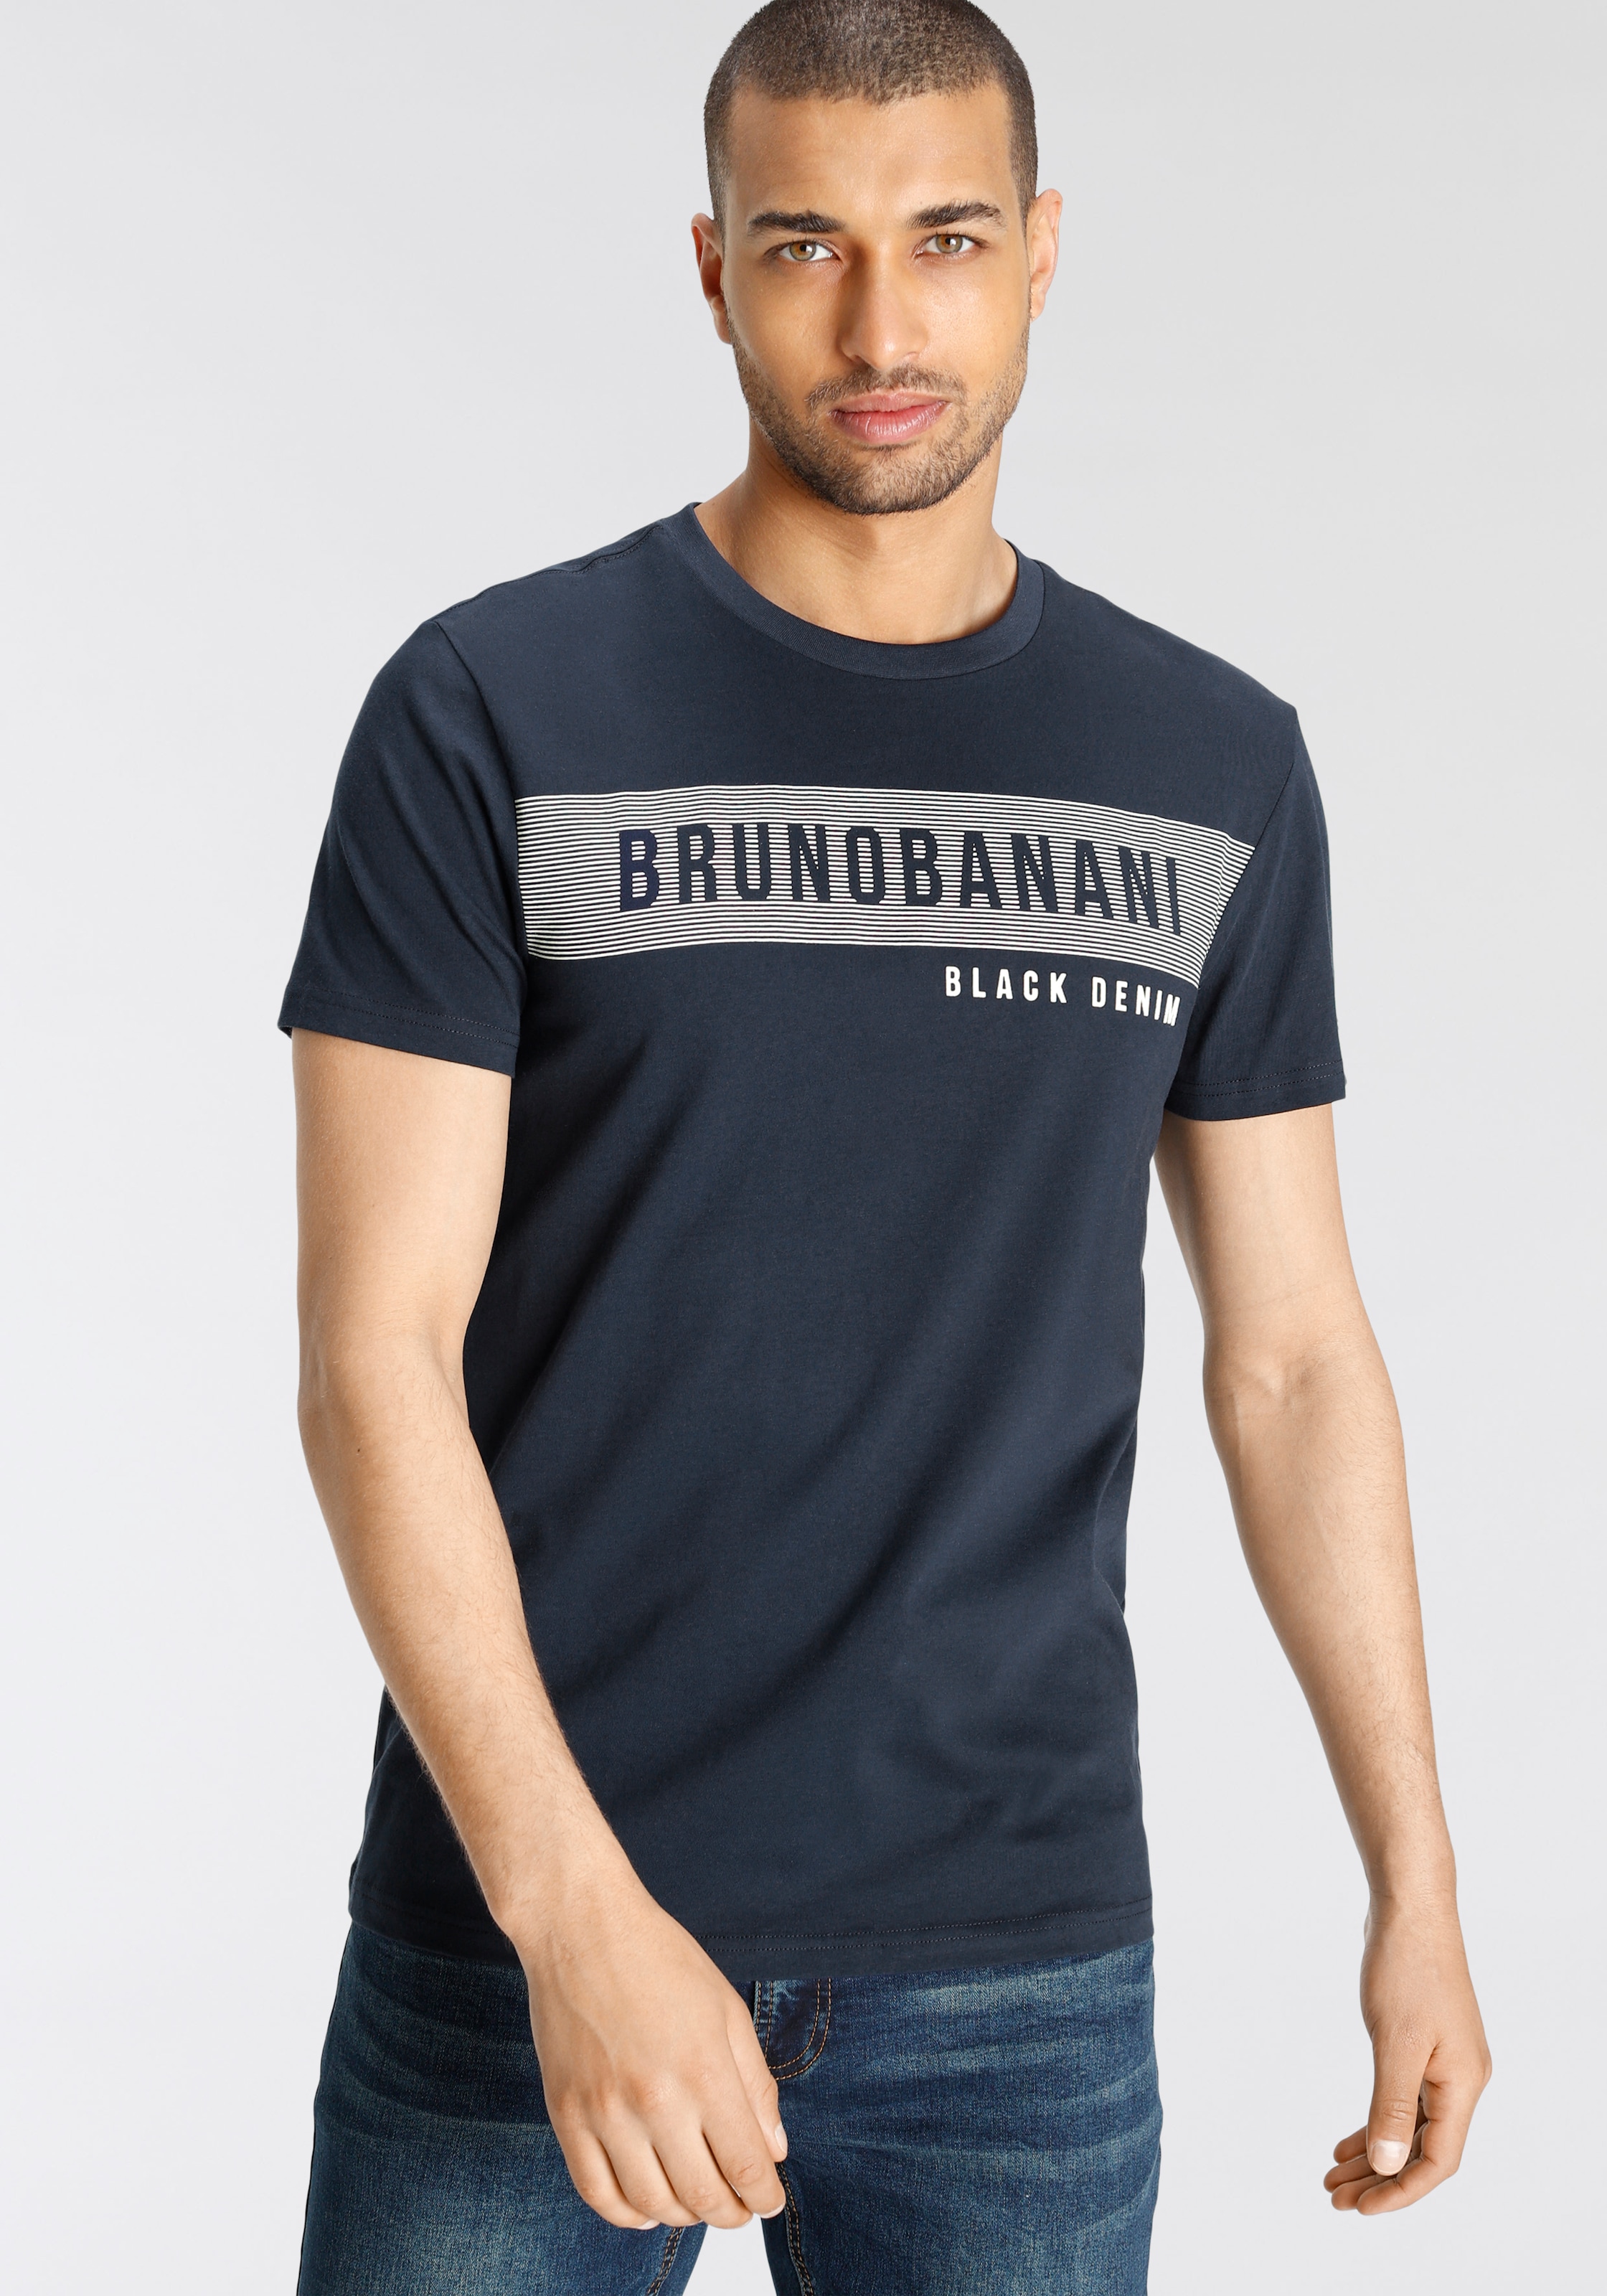 Bruno online bei T-Shirt, Banani Markenprint shoppen mit OTTO